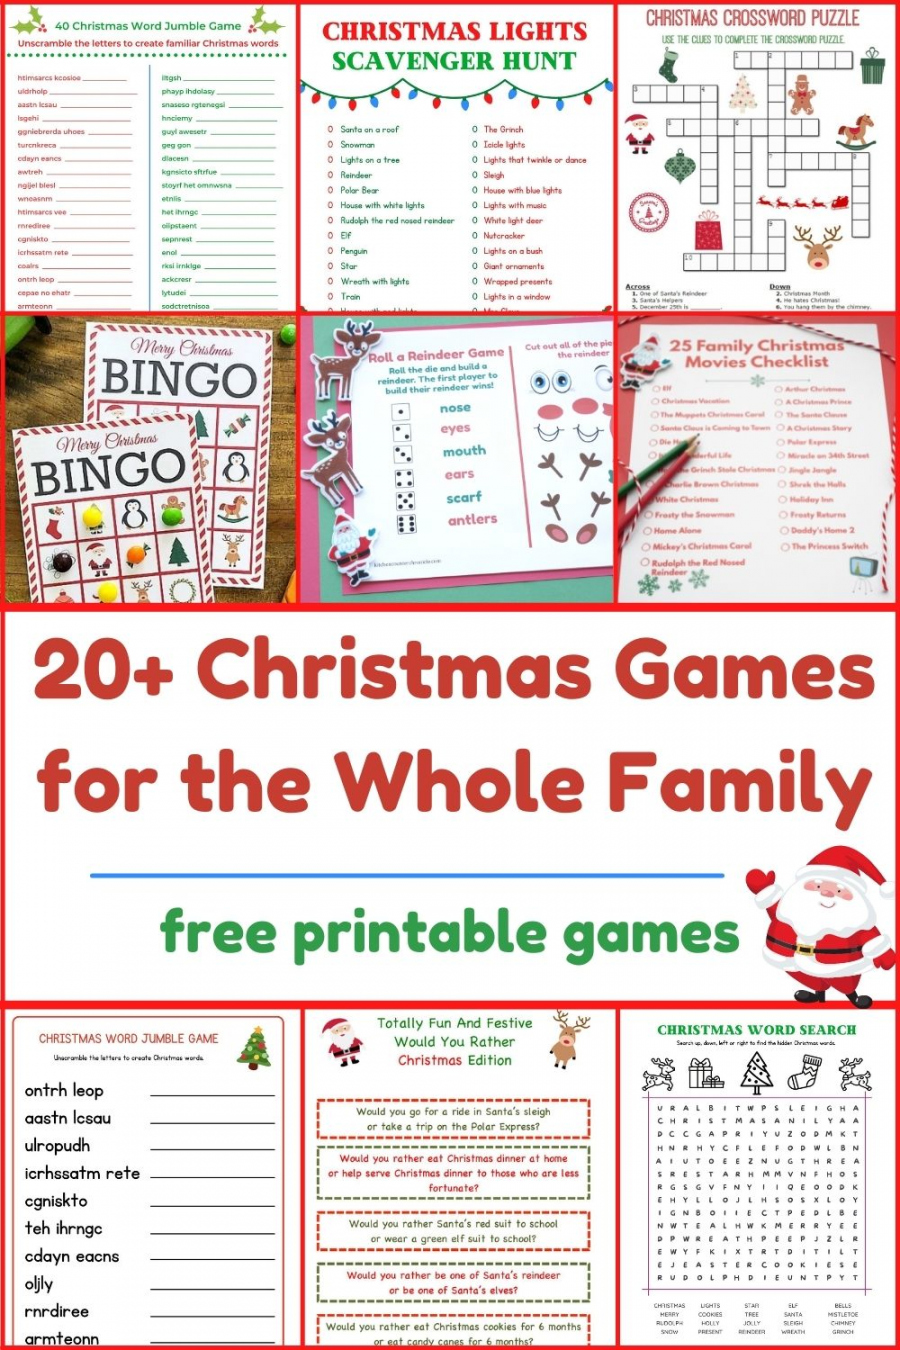 Free Printable Christmas Games - Printable - + Free Printable Christmas Games for the Whole Family